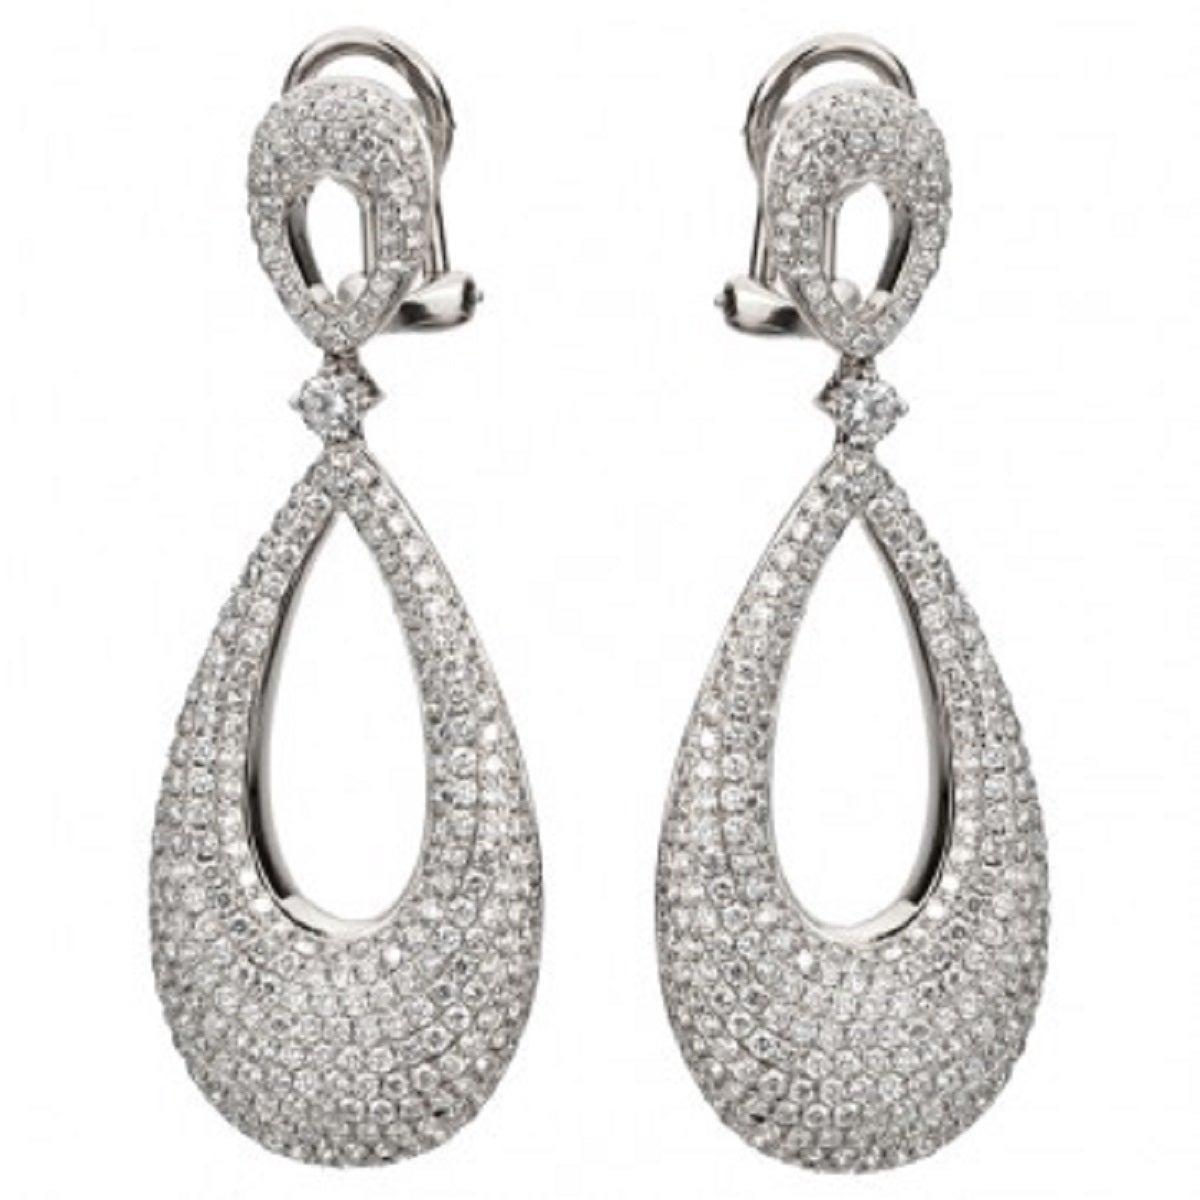 2.90 Carat Diamond Basket Dangle Earrings For Sale